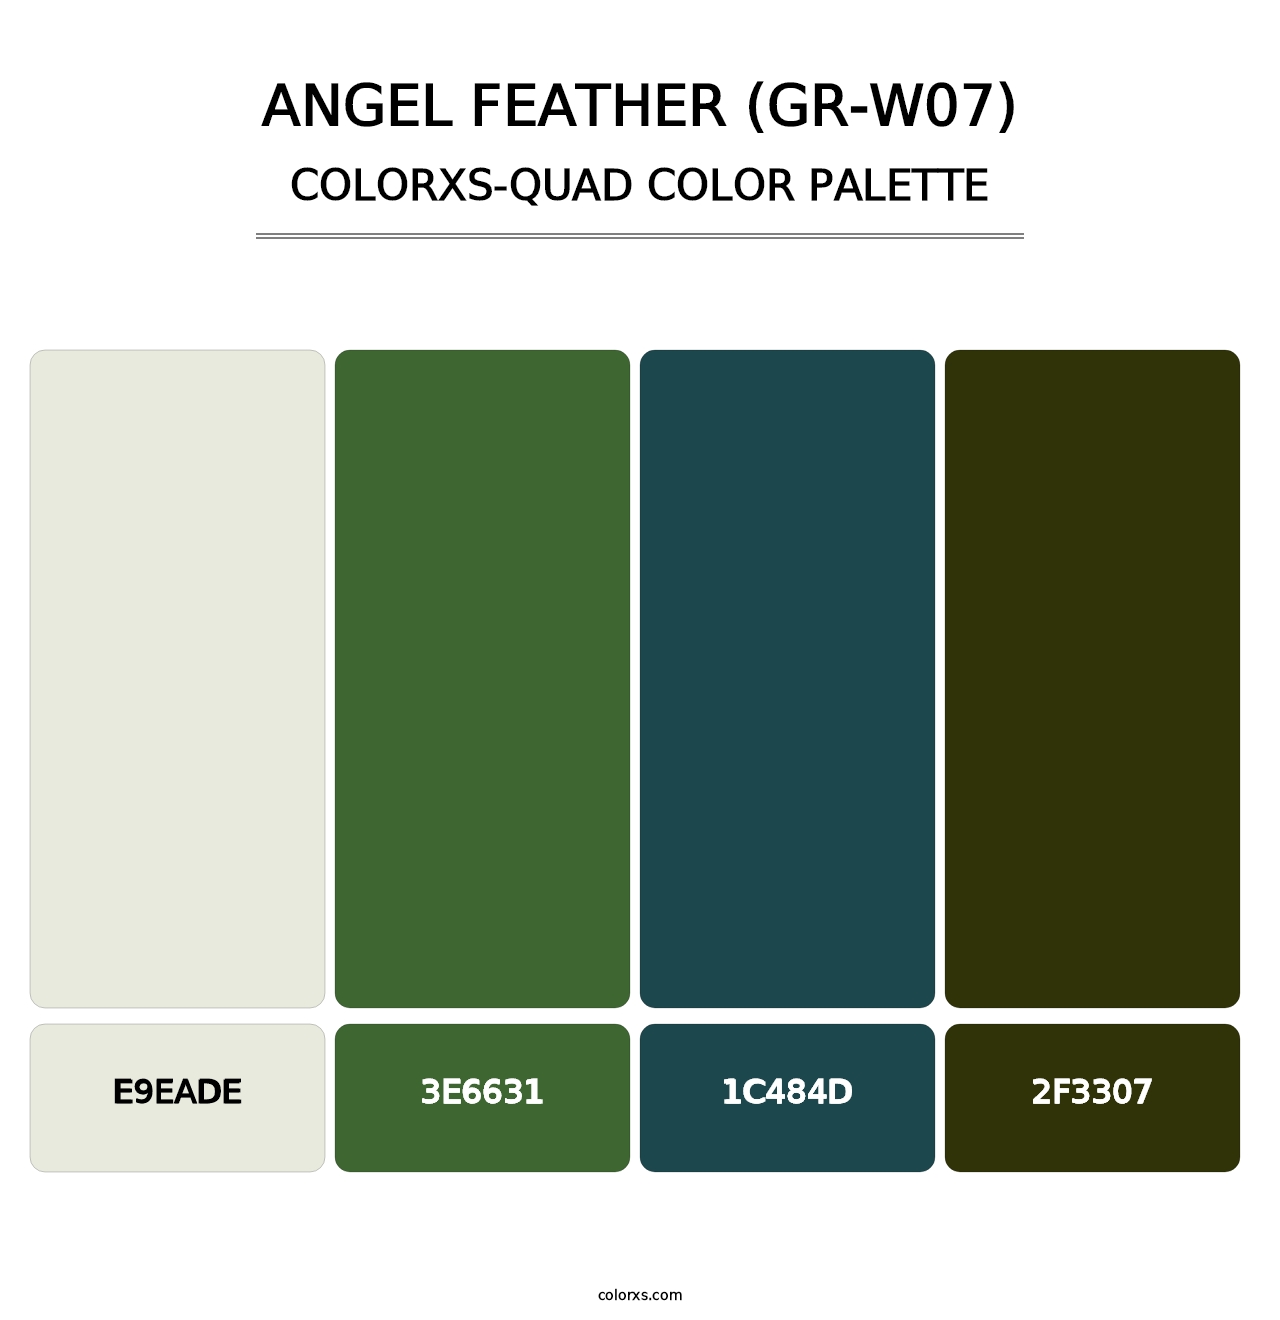 Angel Feather (GR-W07) - Colorxs Quad Palette